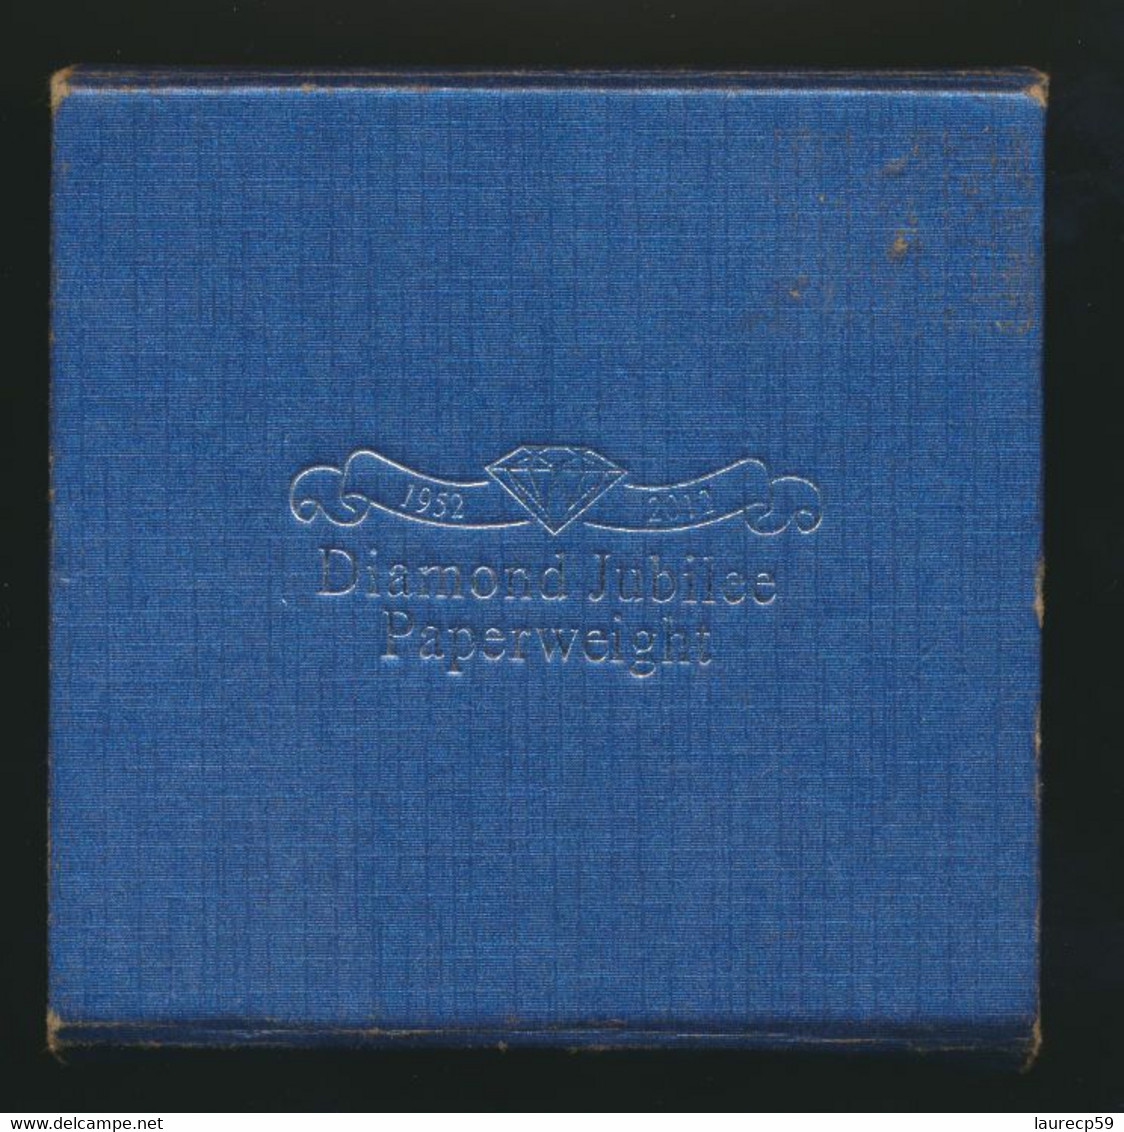 Sulfure -- Boule De Verre - Paperweight -  Souvenir Du Jubilé De La Reine Elizabeth II - 1952 -2012- England - Paper-weights